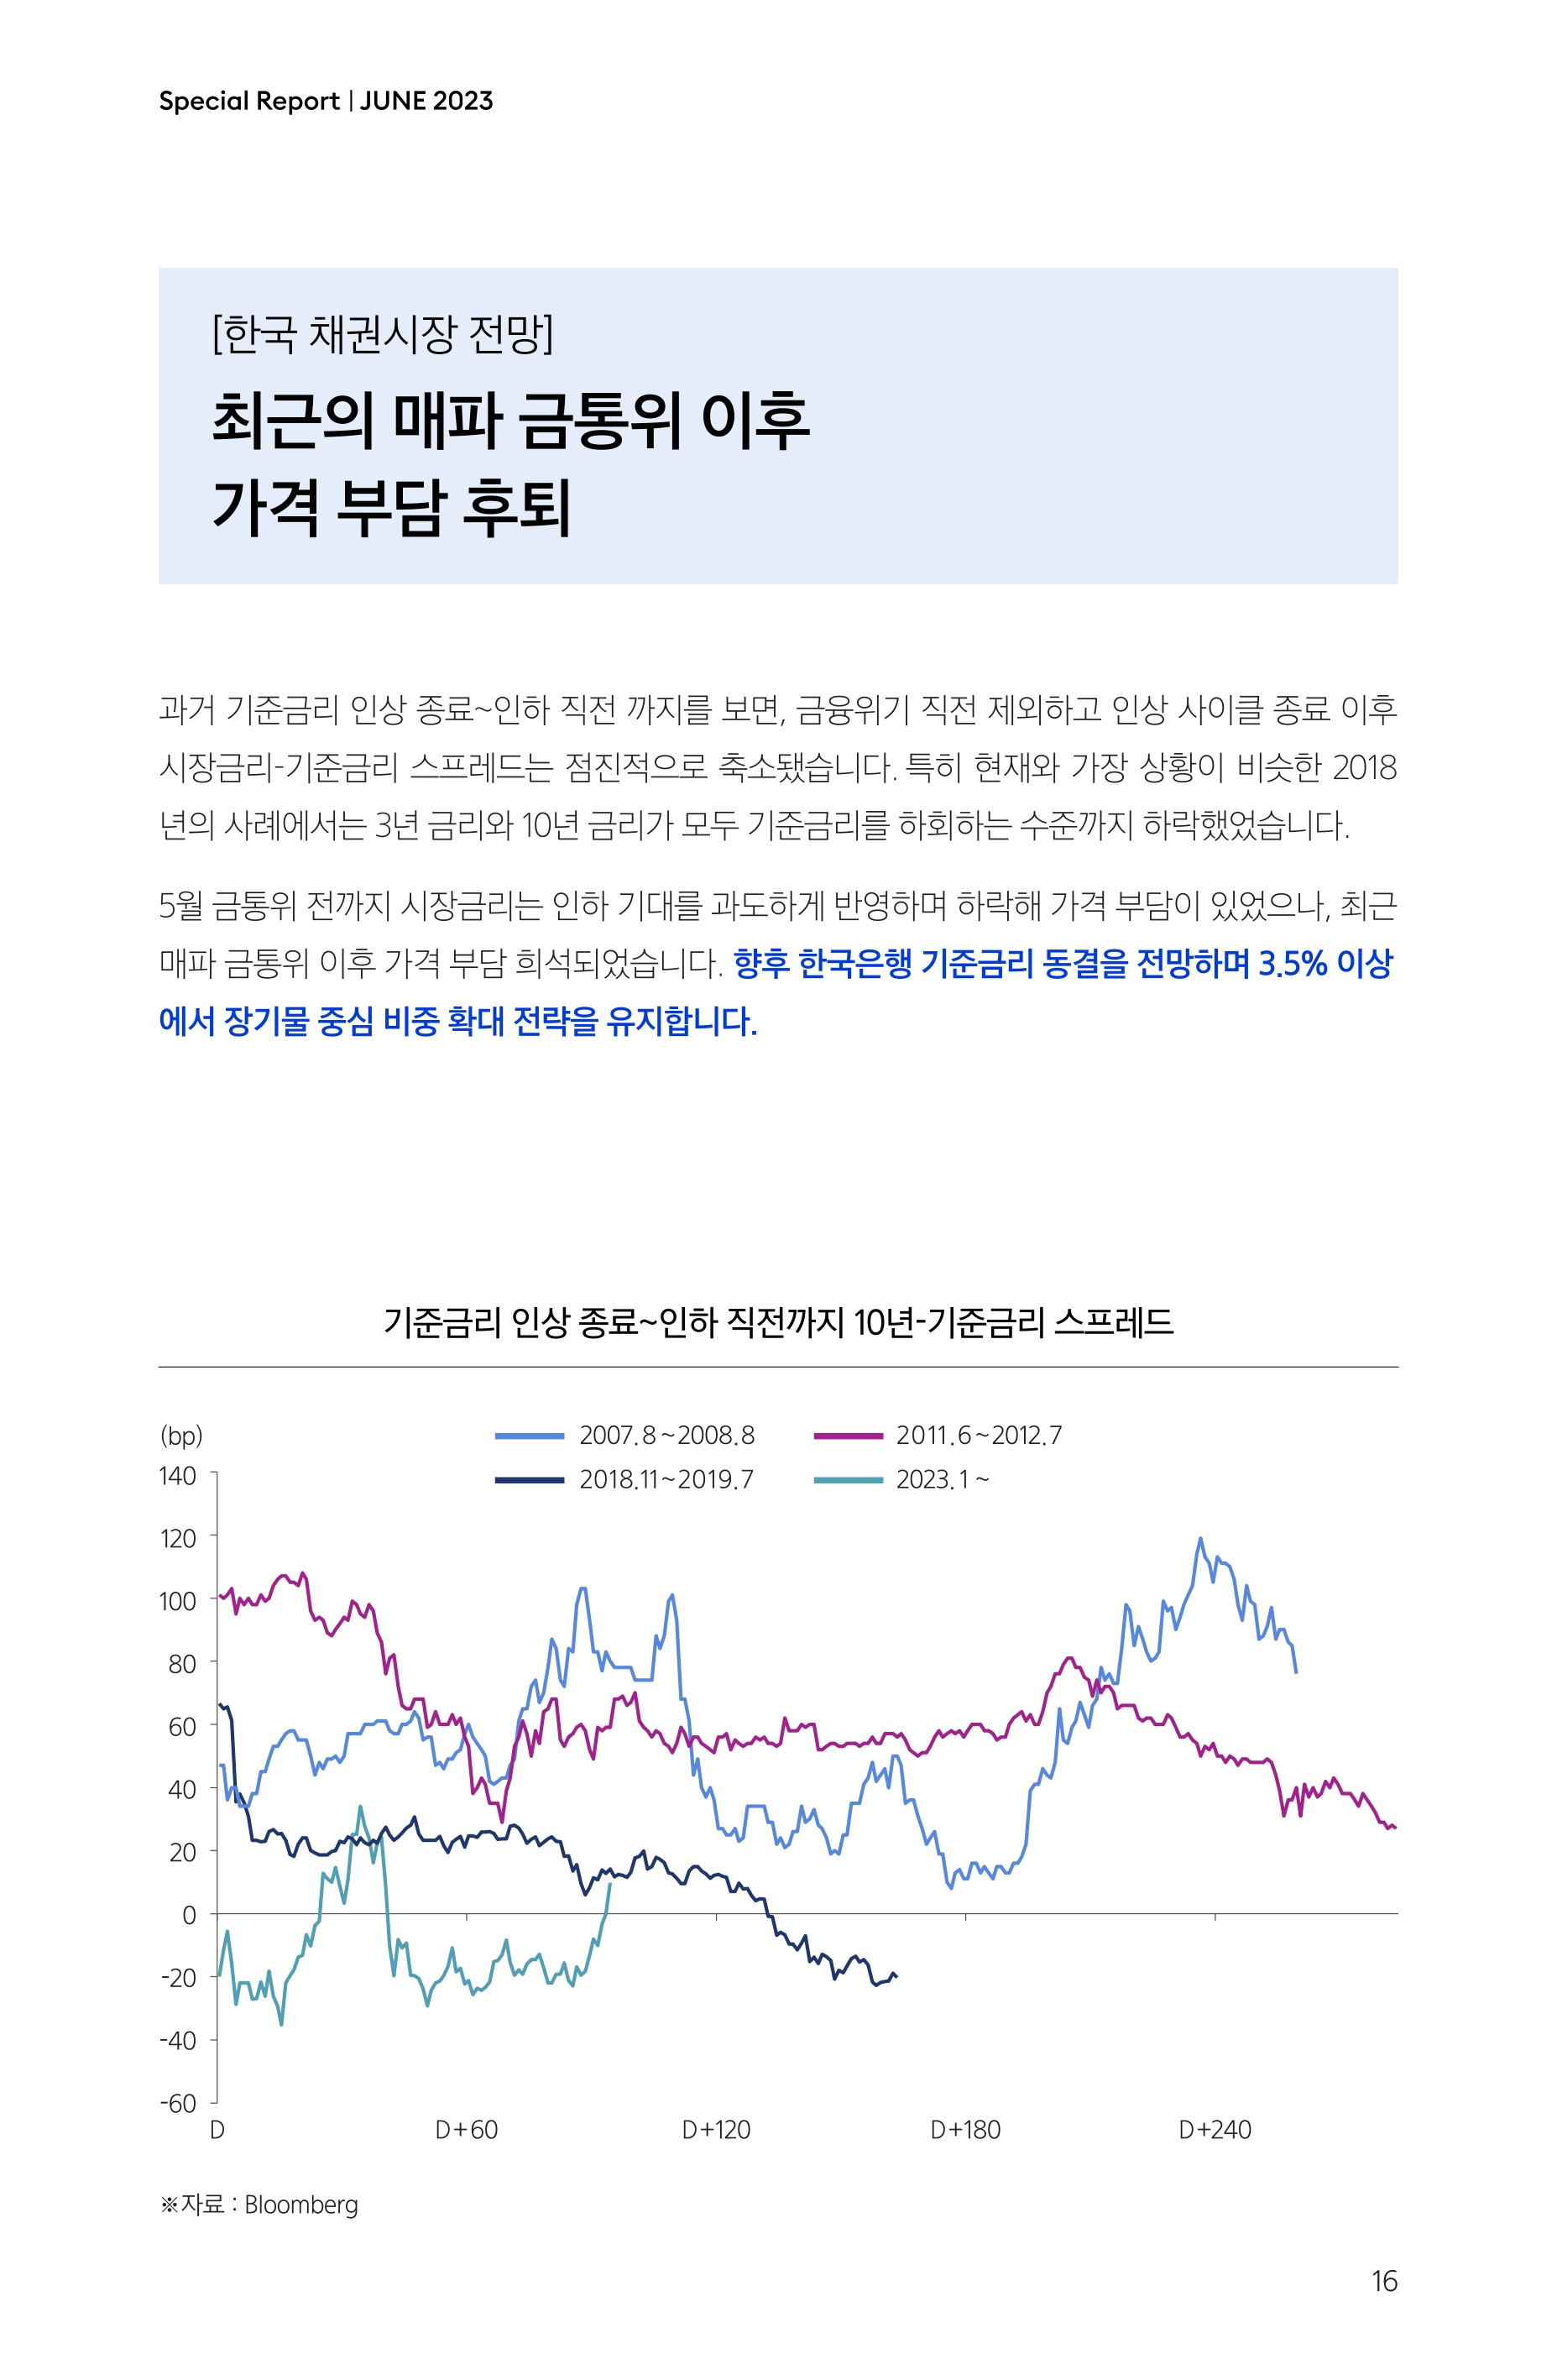 Samsung Global Market Outlook(낱장)_202306_page-0016.jpg